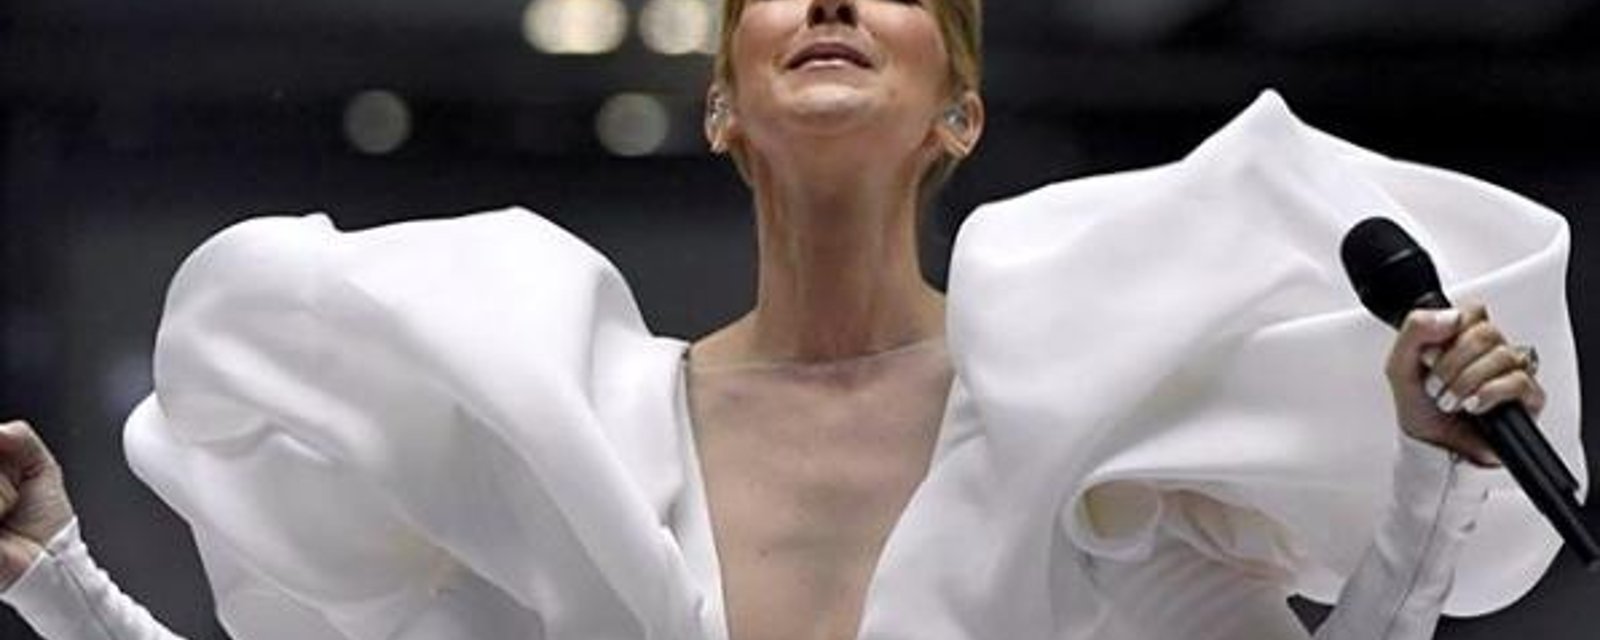 Céline Dion est la 2e personnalité qui s'habille le mieux au monde, selon ce classement prestigieux